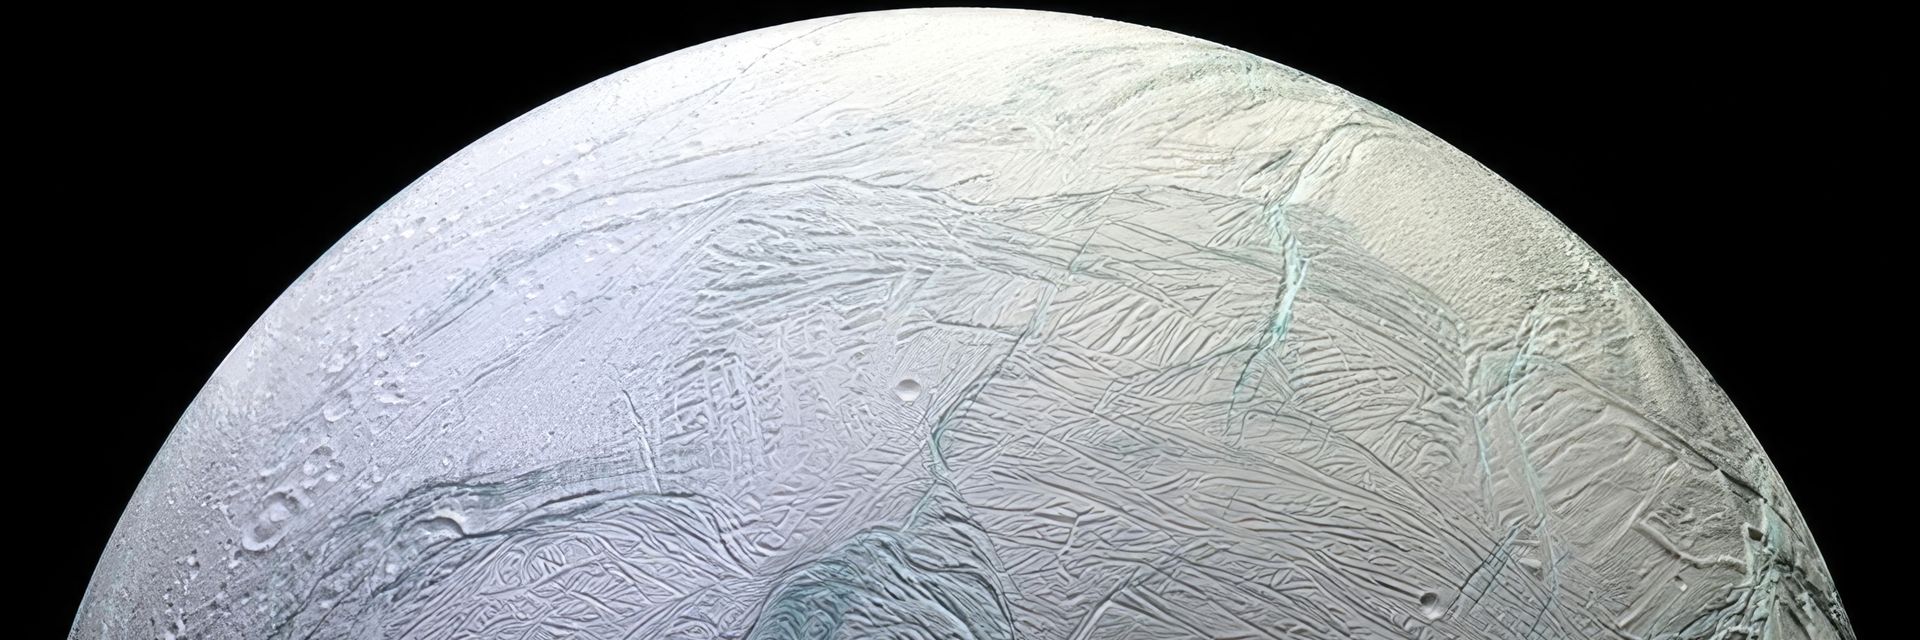 Enceladus&#58; Saturn&#8217;s Habitable Moon